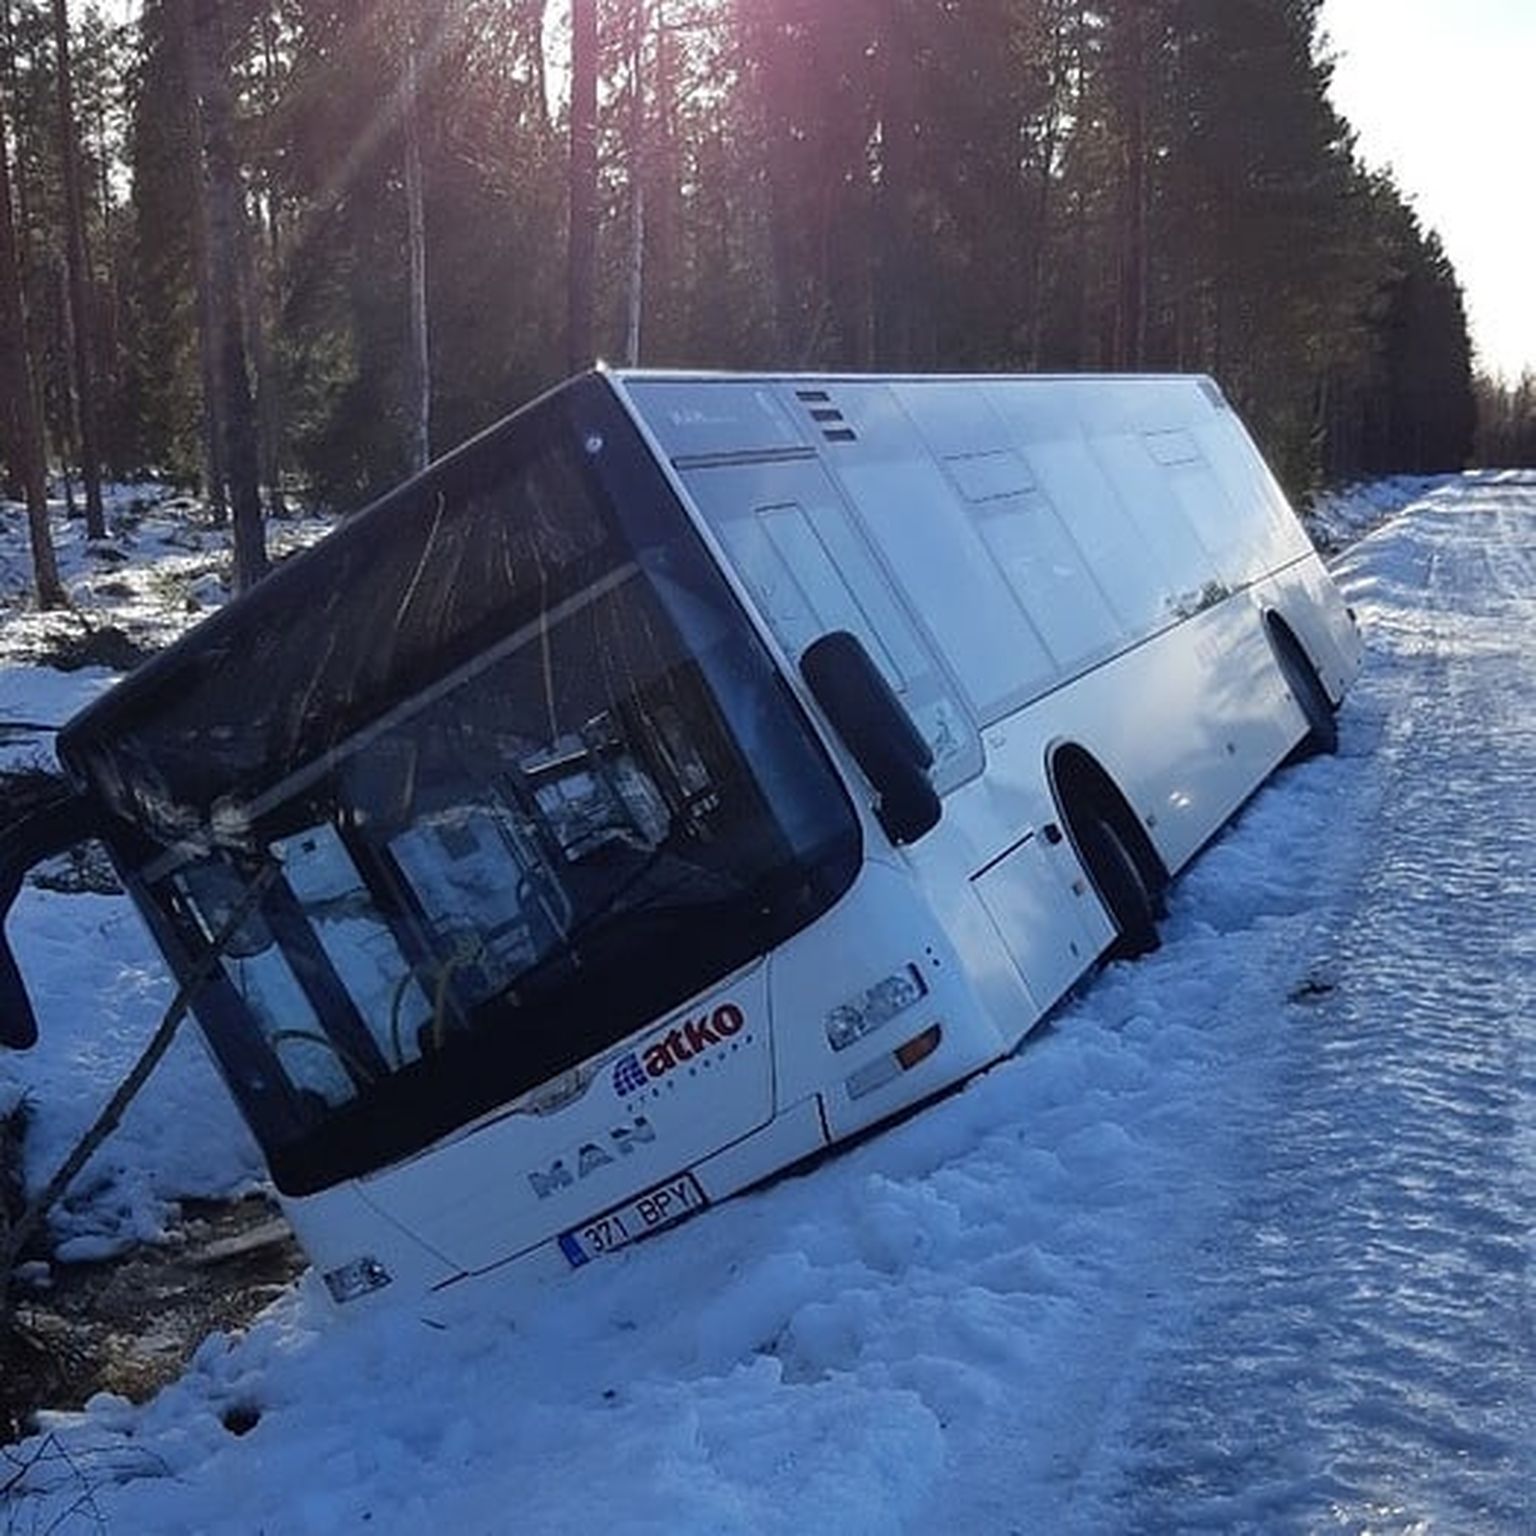 ATKO Bussiliinide Narva buss sõitis 17. veebruaril jäise tee tõttu kraavi ning tuli välja vahetada. Selle tagajärjel tekkis tol päeval bussiühendusega probleeme ka teistel linnaliinidel.